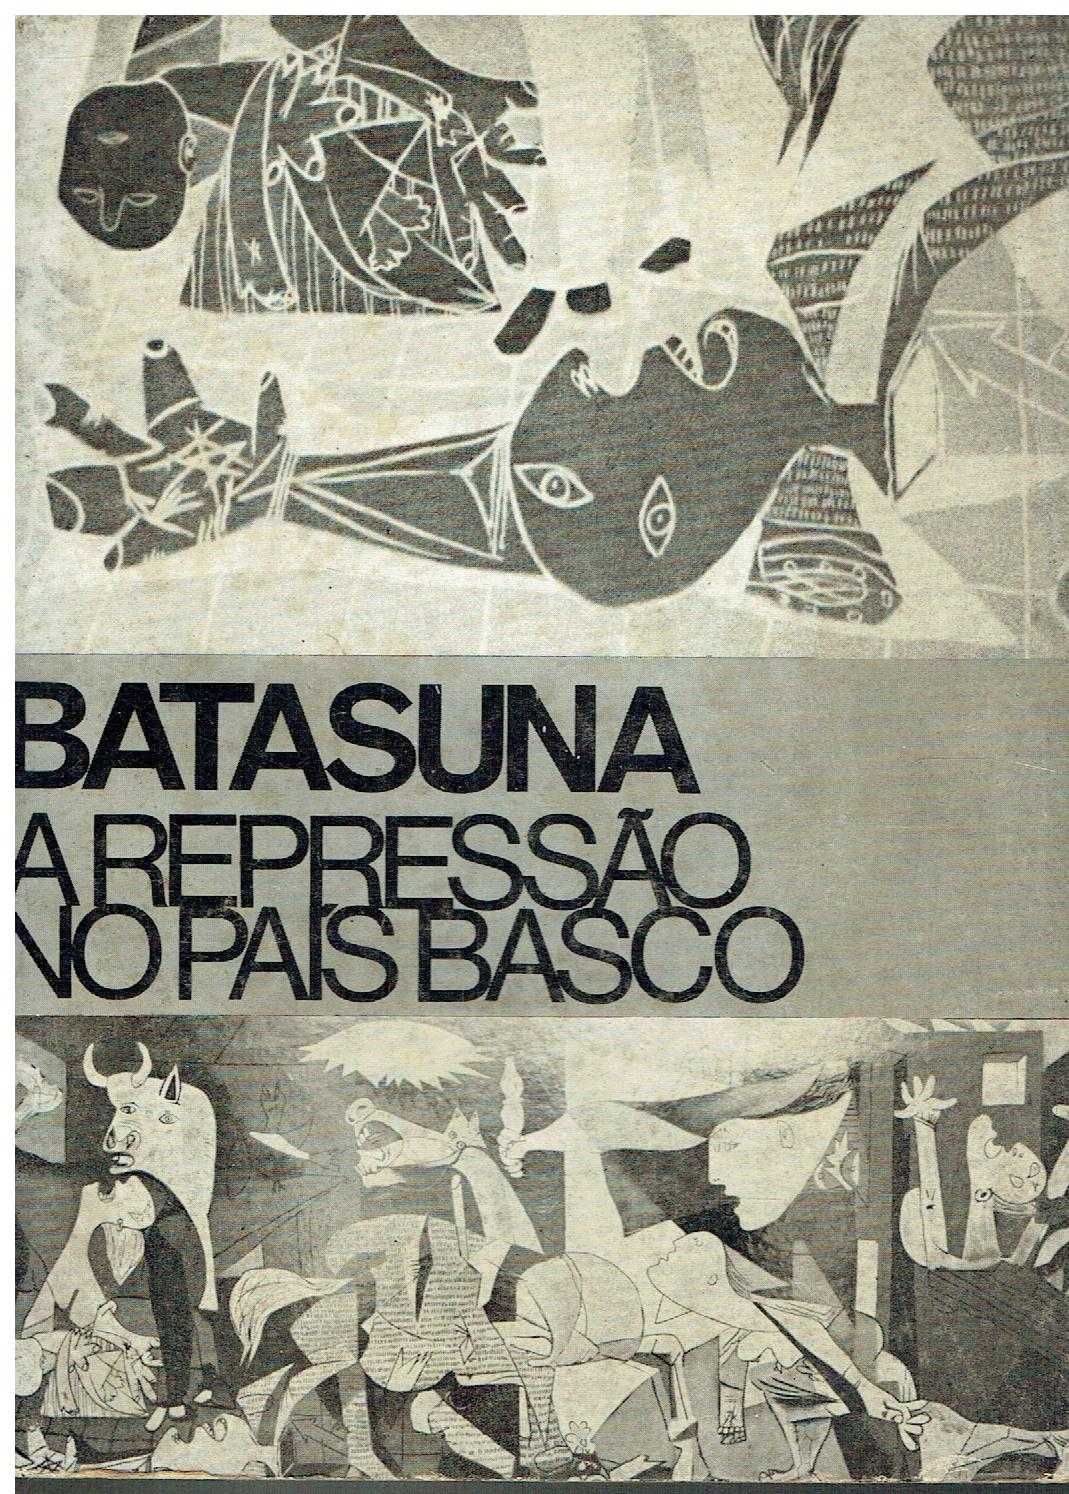 13465

Batasuna A Repressão no País Basco
Trad. Carlos Ramires